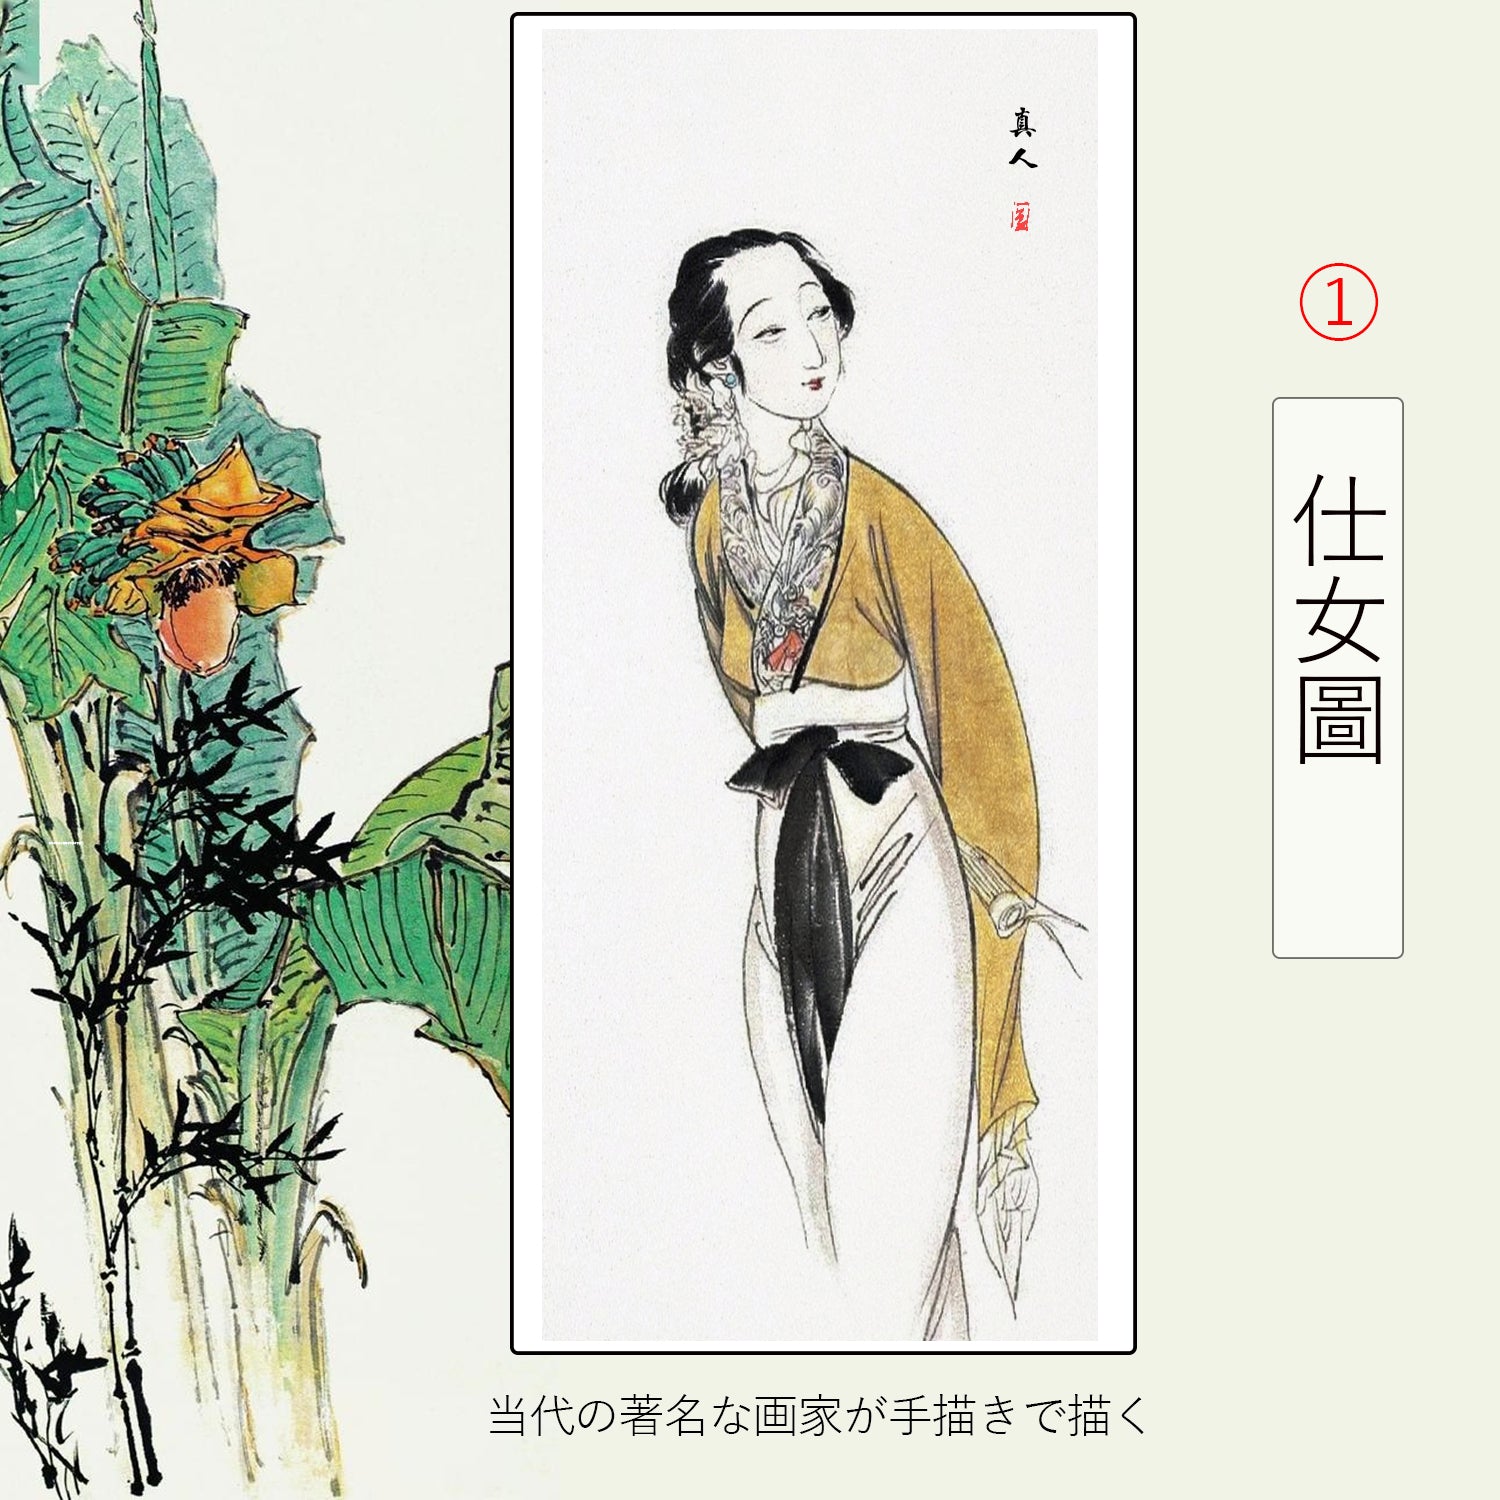 仕女画(図)】水墨人物画 掛け軸 掛軸 画家の手描き 中国書画 近代絵画